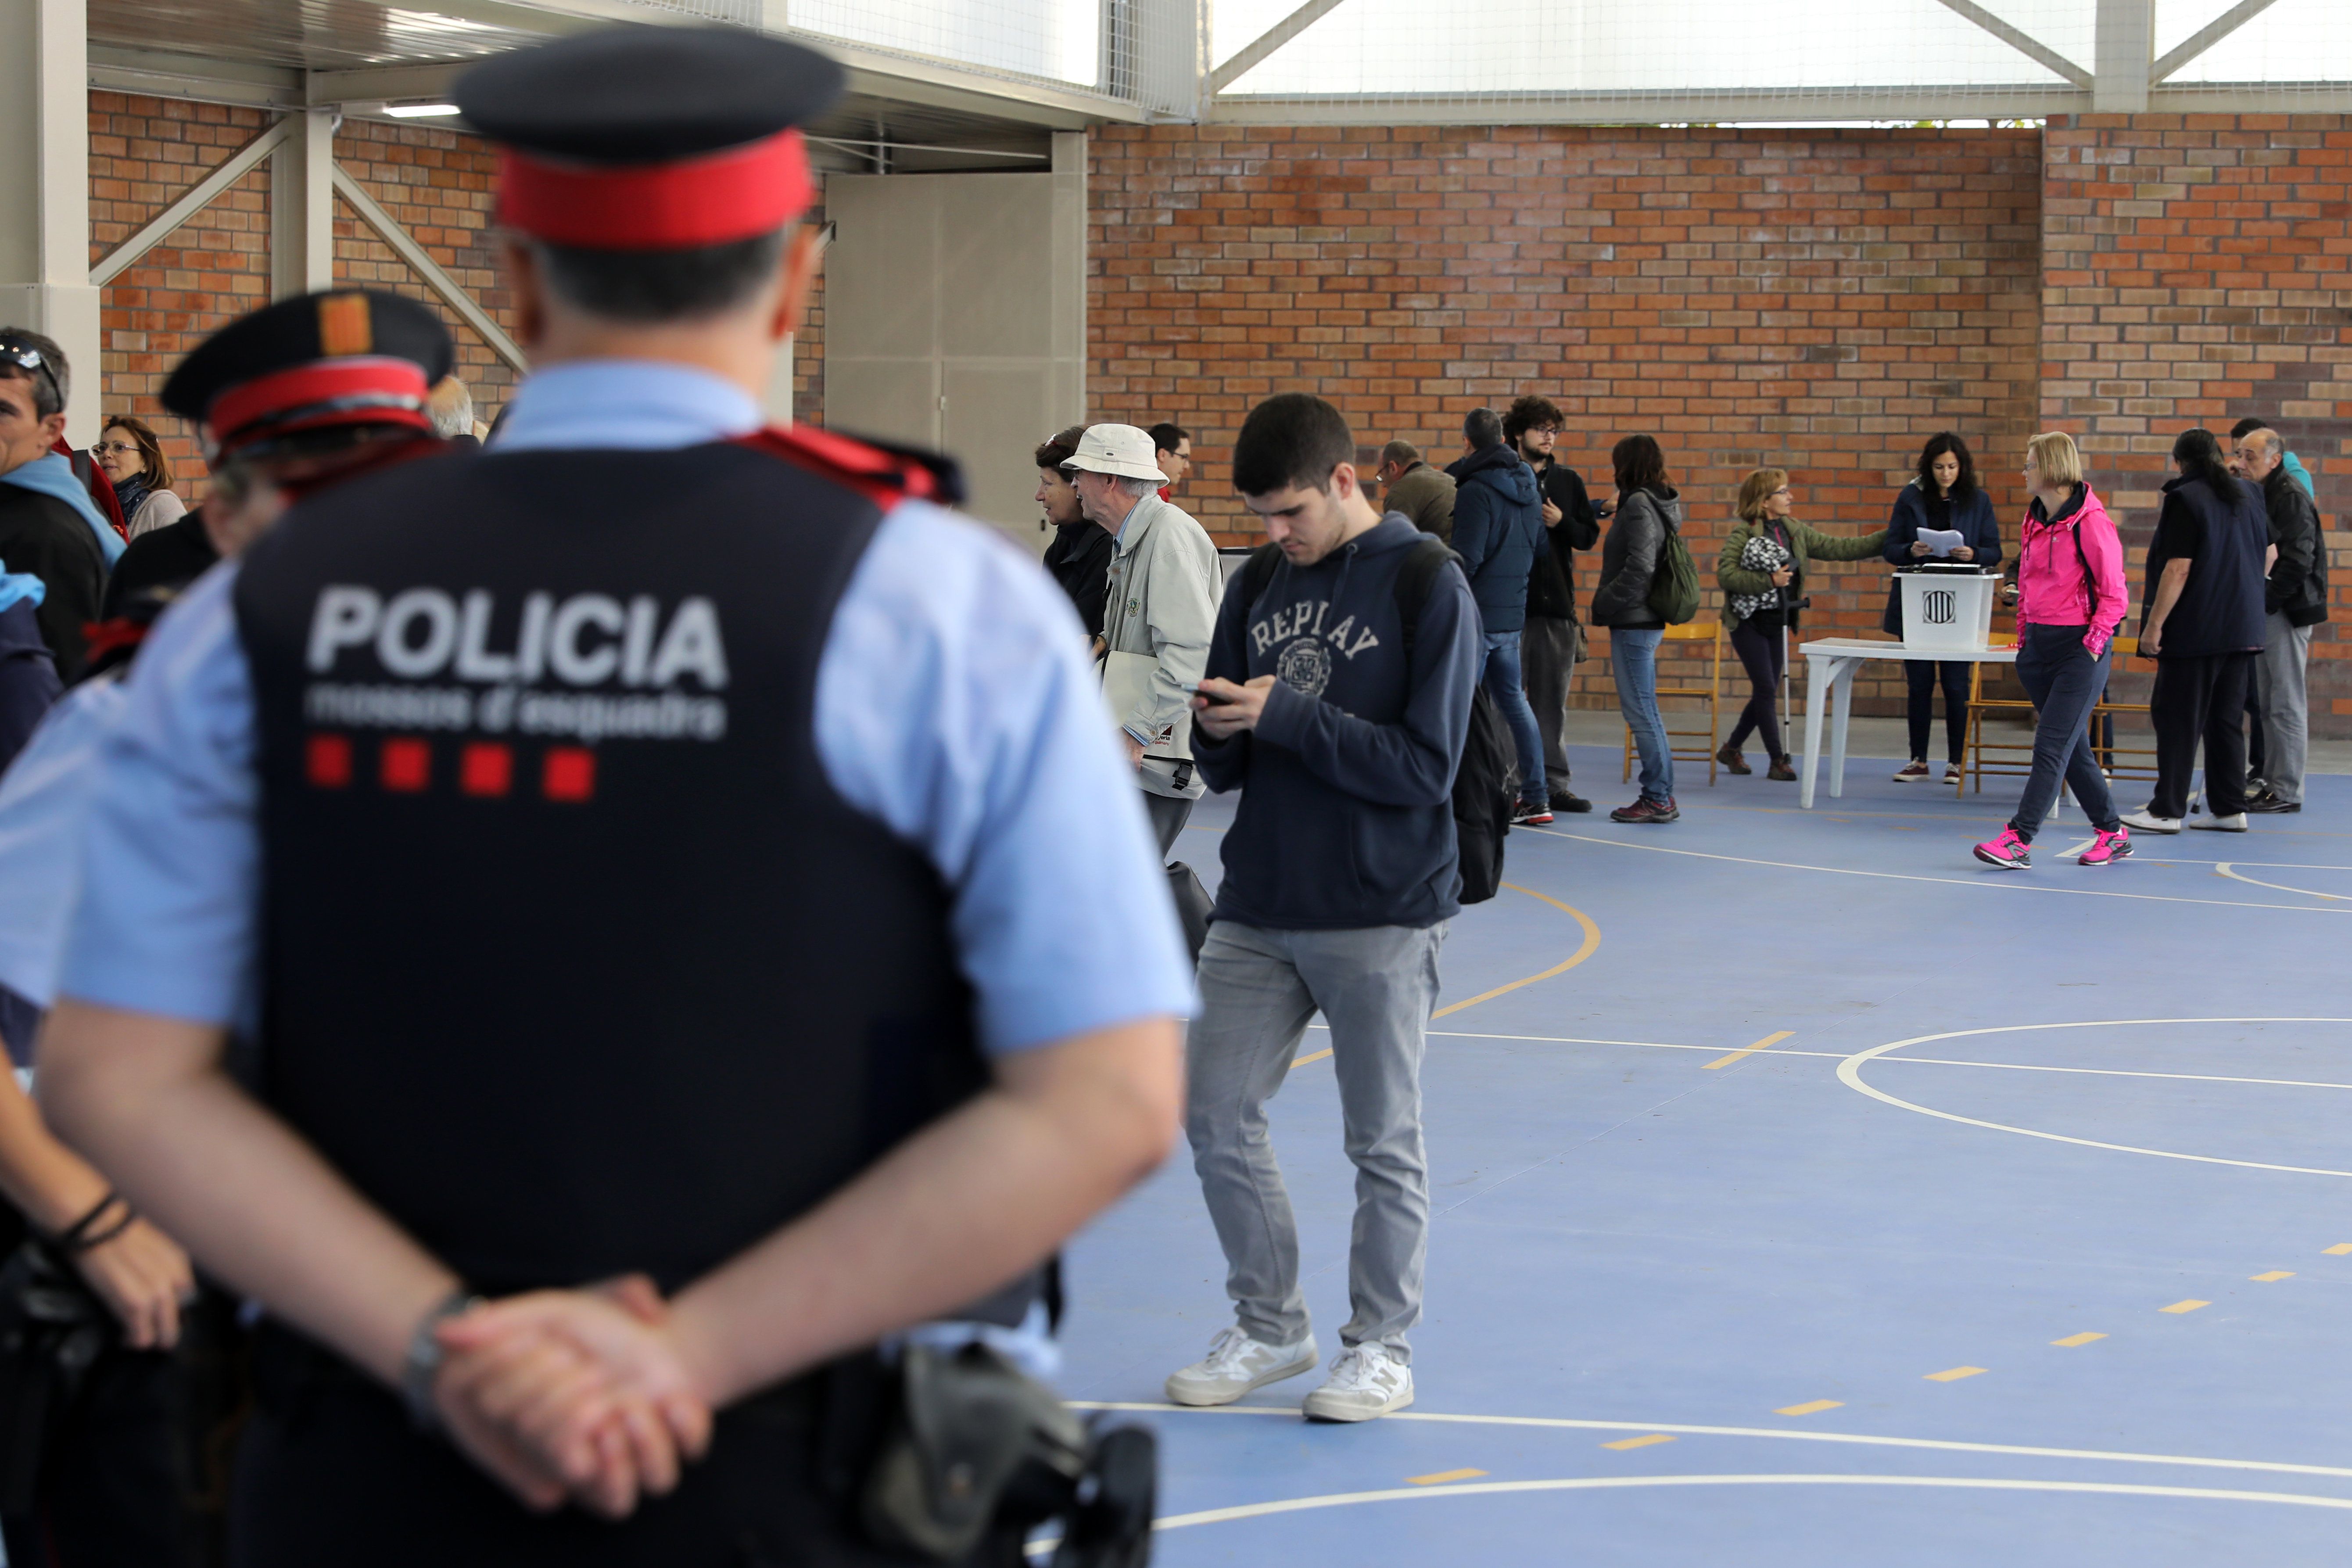 شرطة إسبانيا